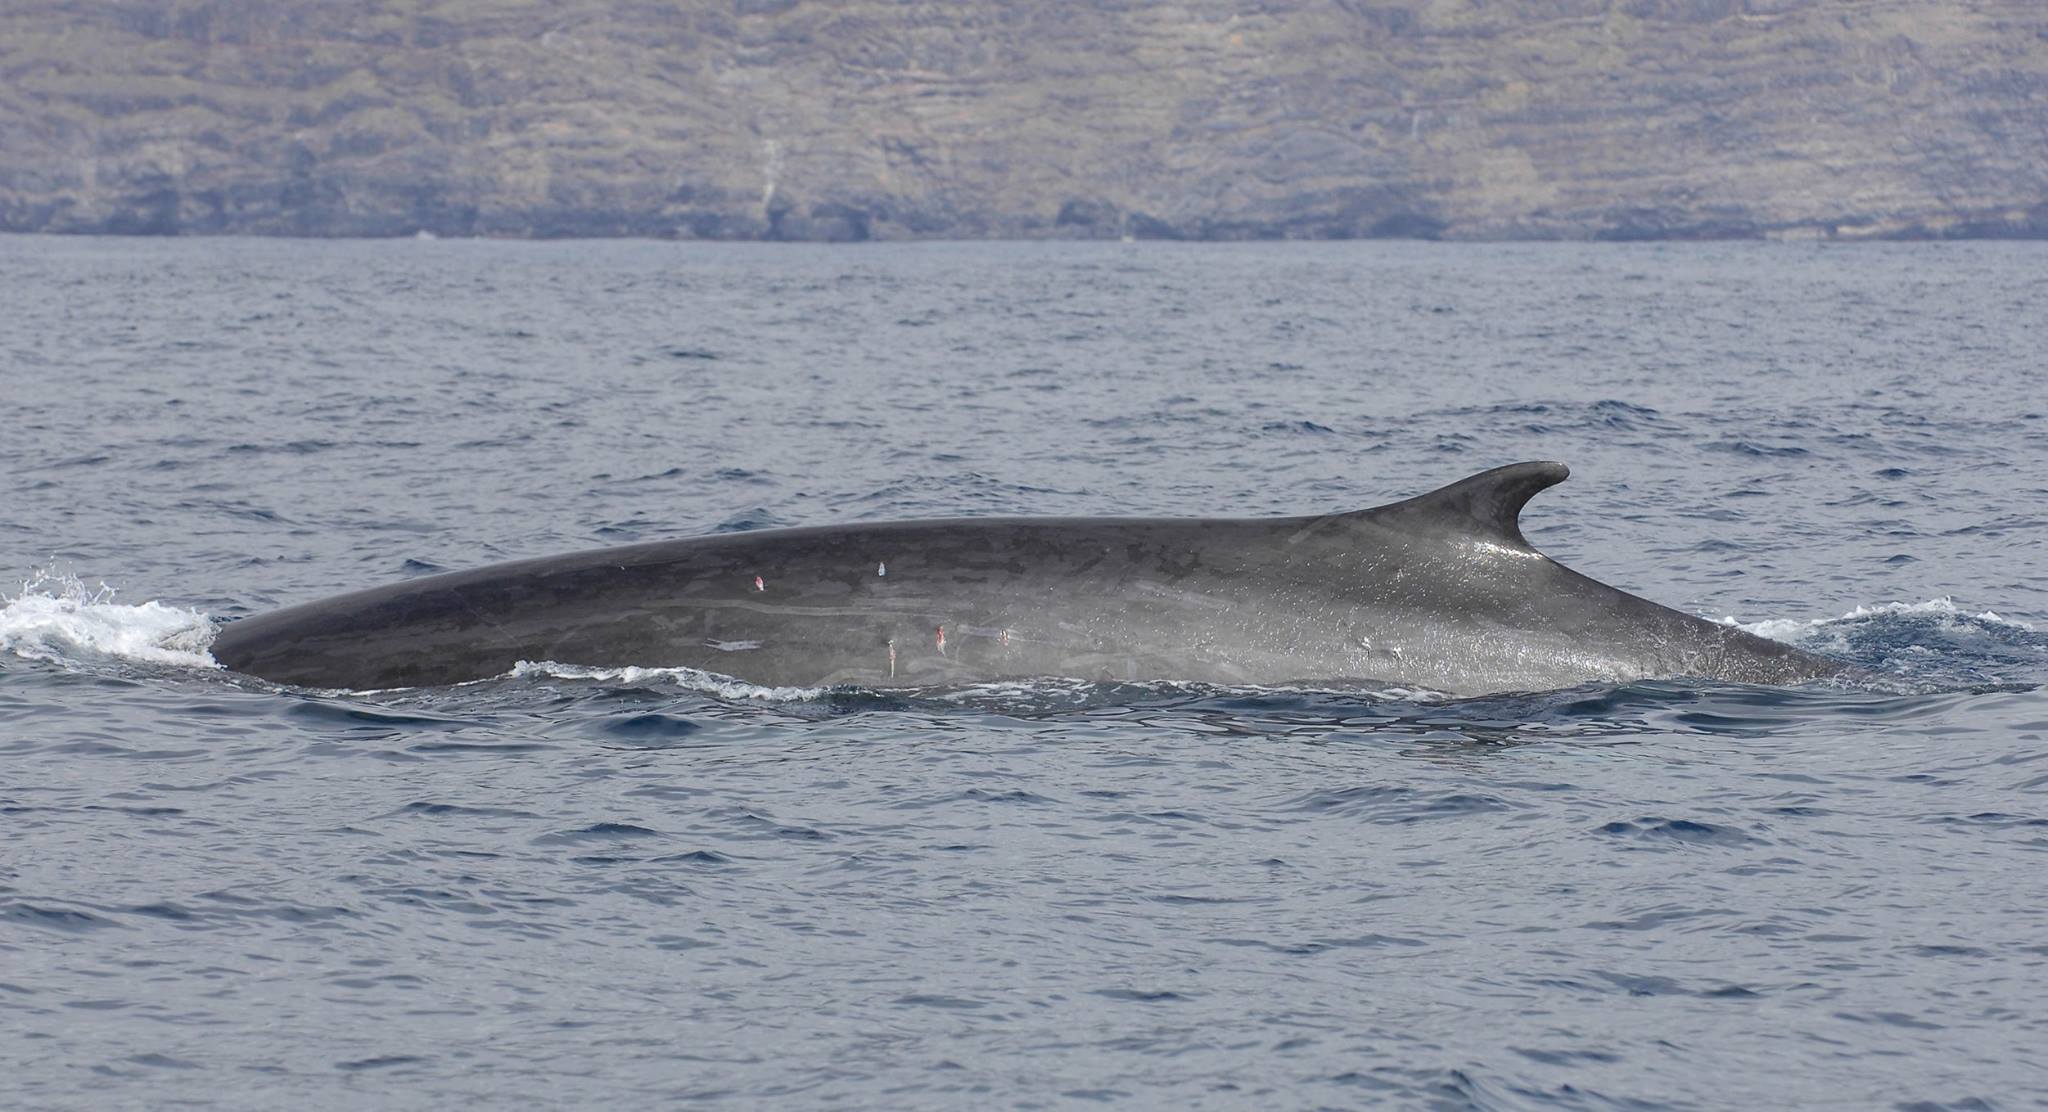 Whales La Gomera